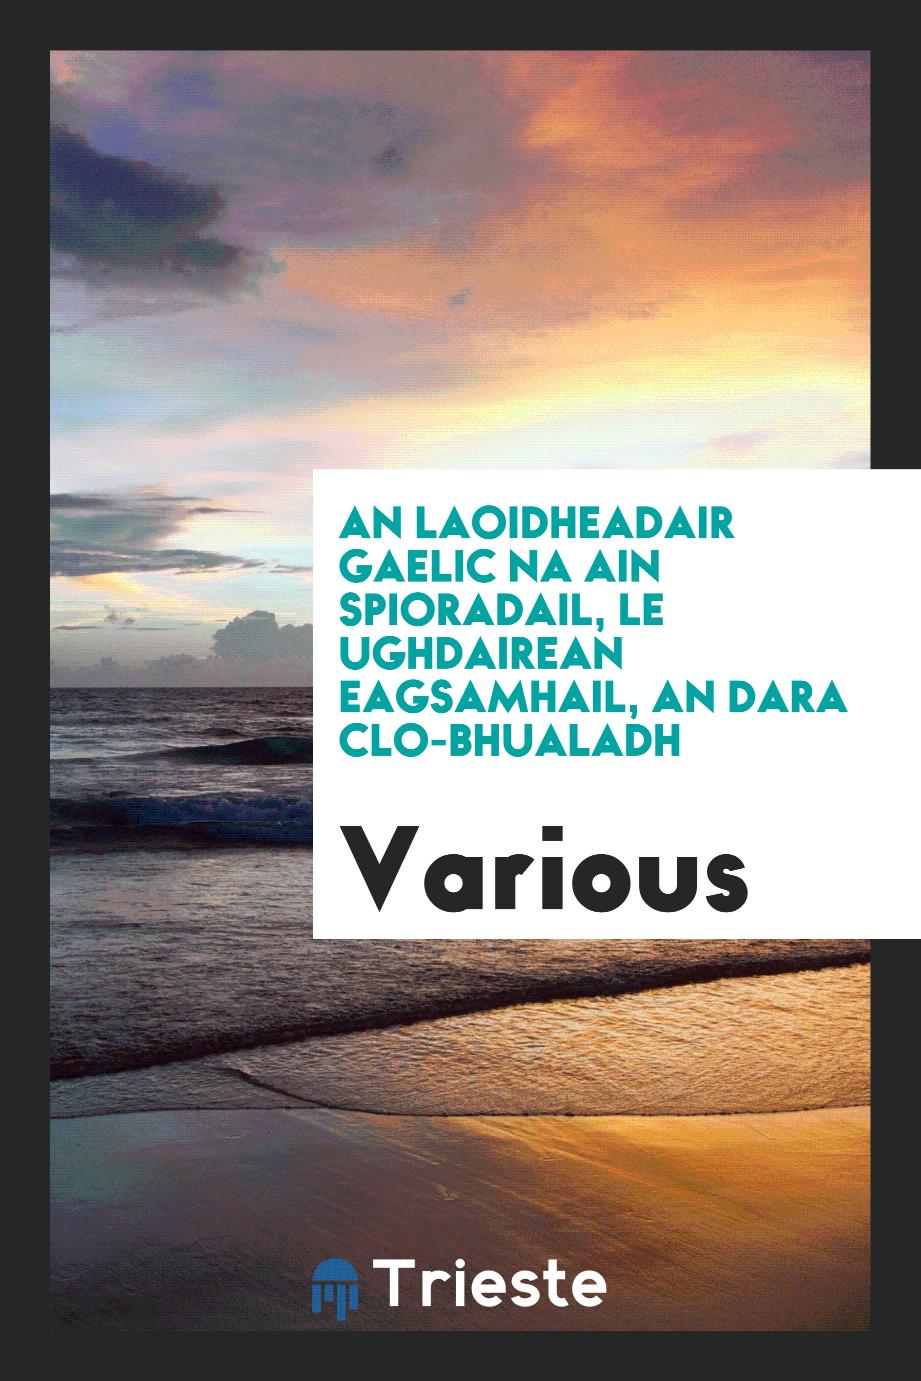 An Laoidheadair Gaelic na ain spioradail, le Ughdairean Eagsamhail, an Dara Clo-Bhualadh